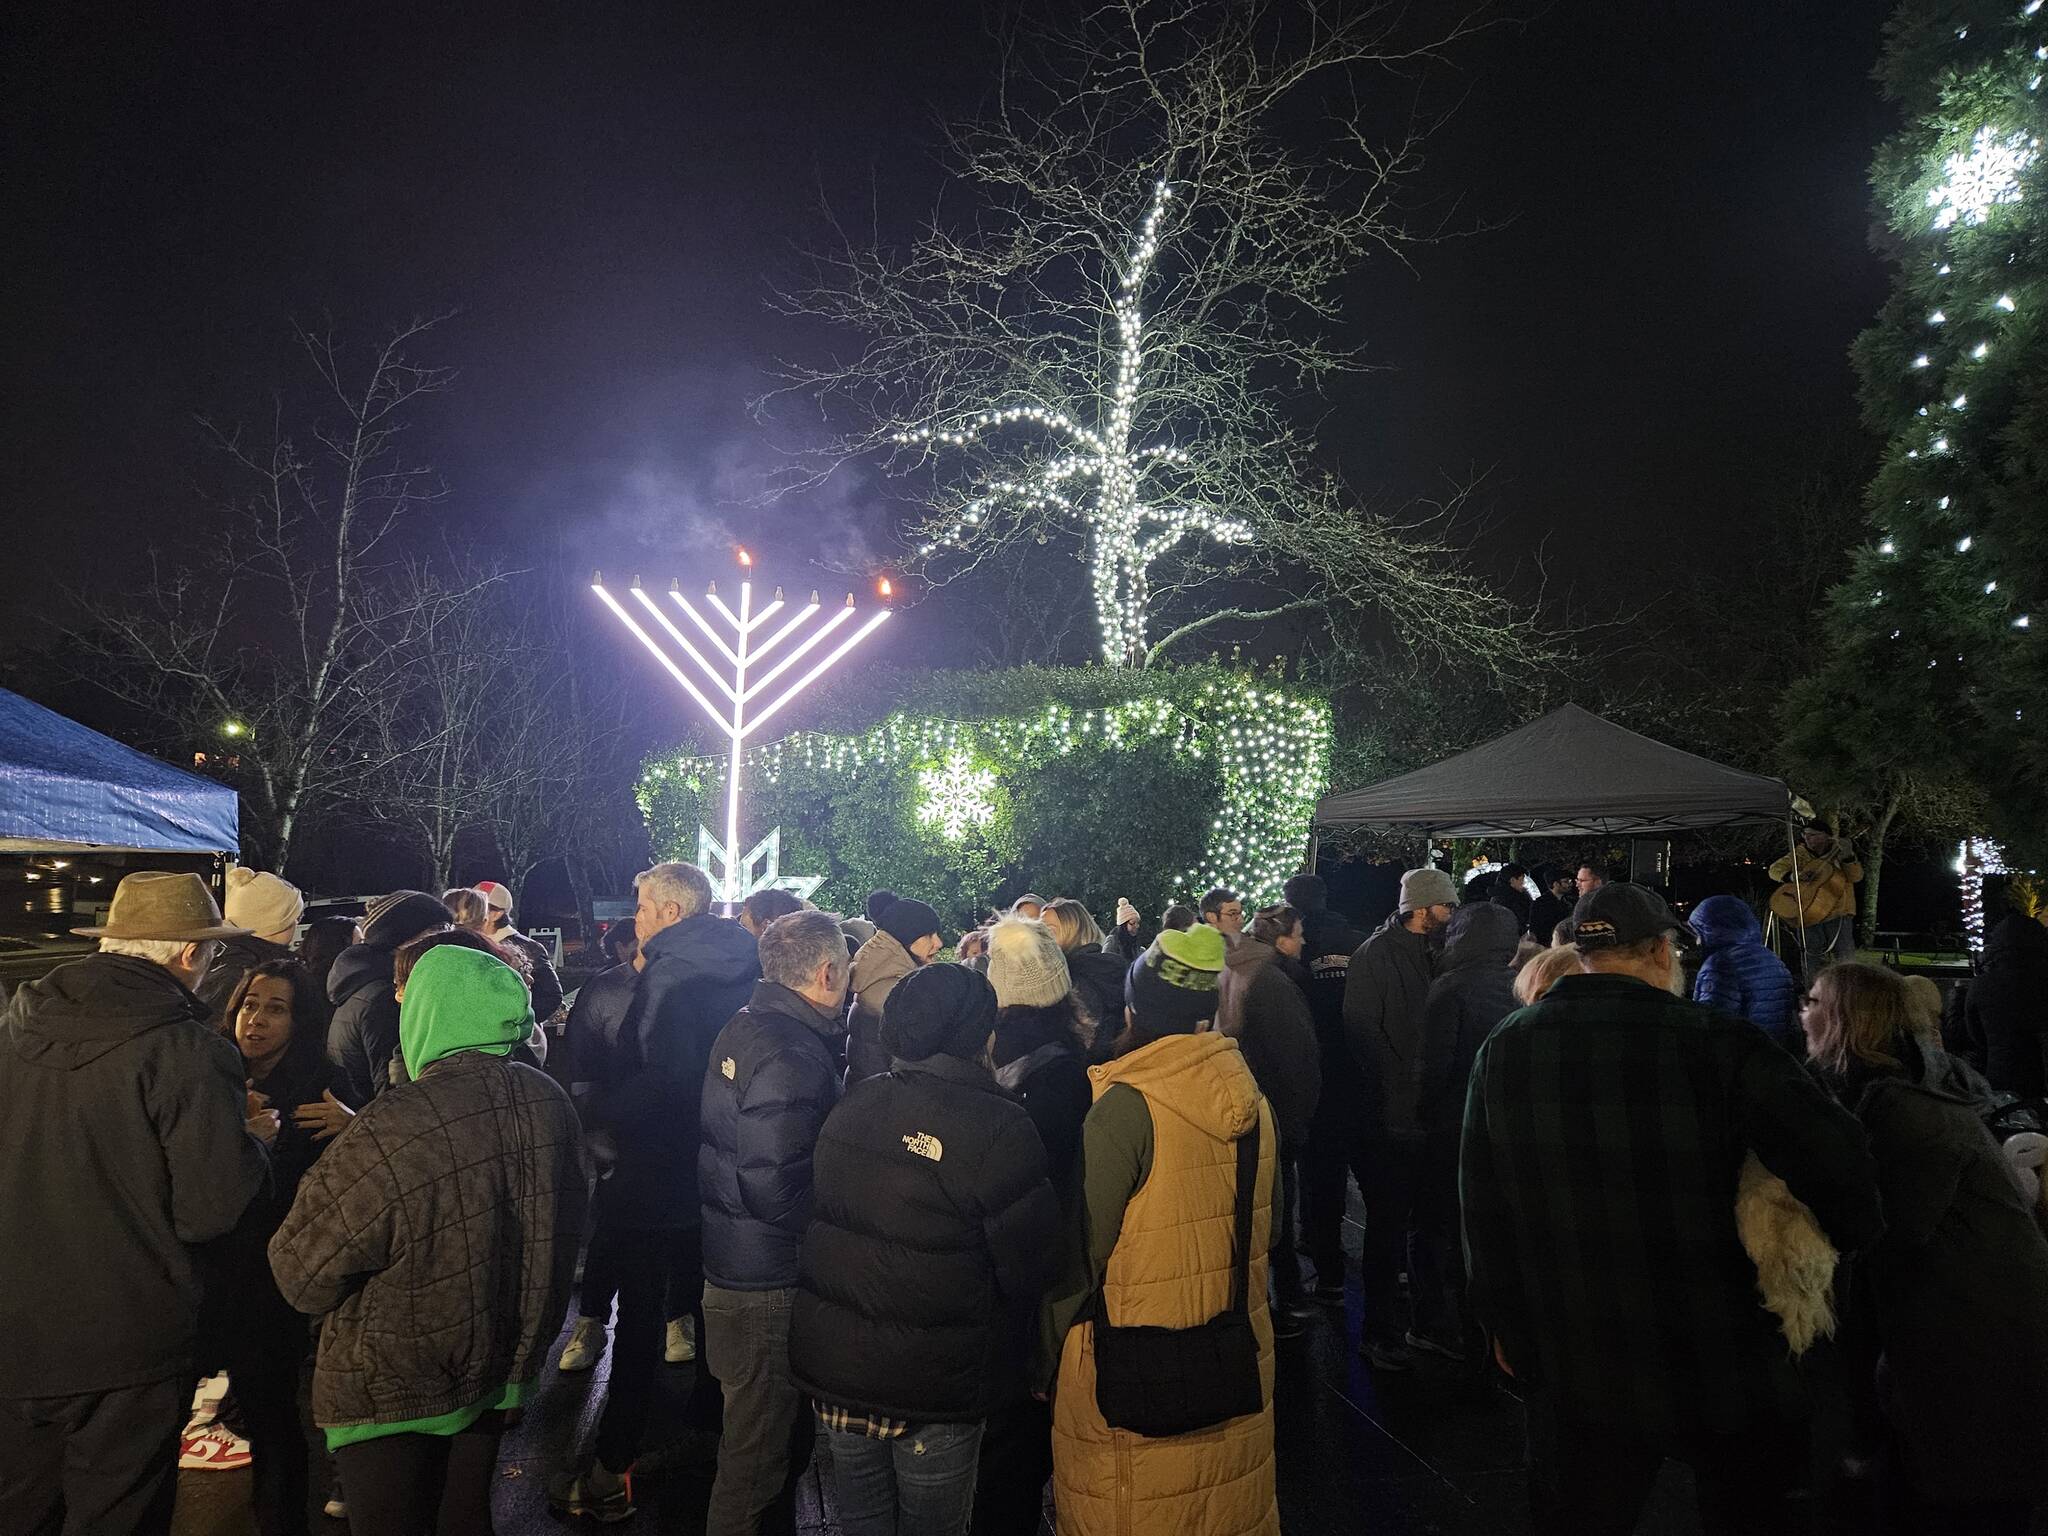 The Menorah Lighting at Mercerdale Park on Dec. 7. (Photo courtesy of John Hamer)